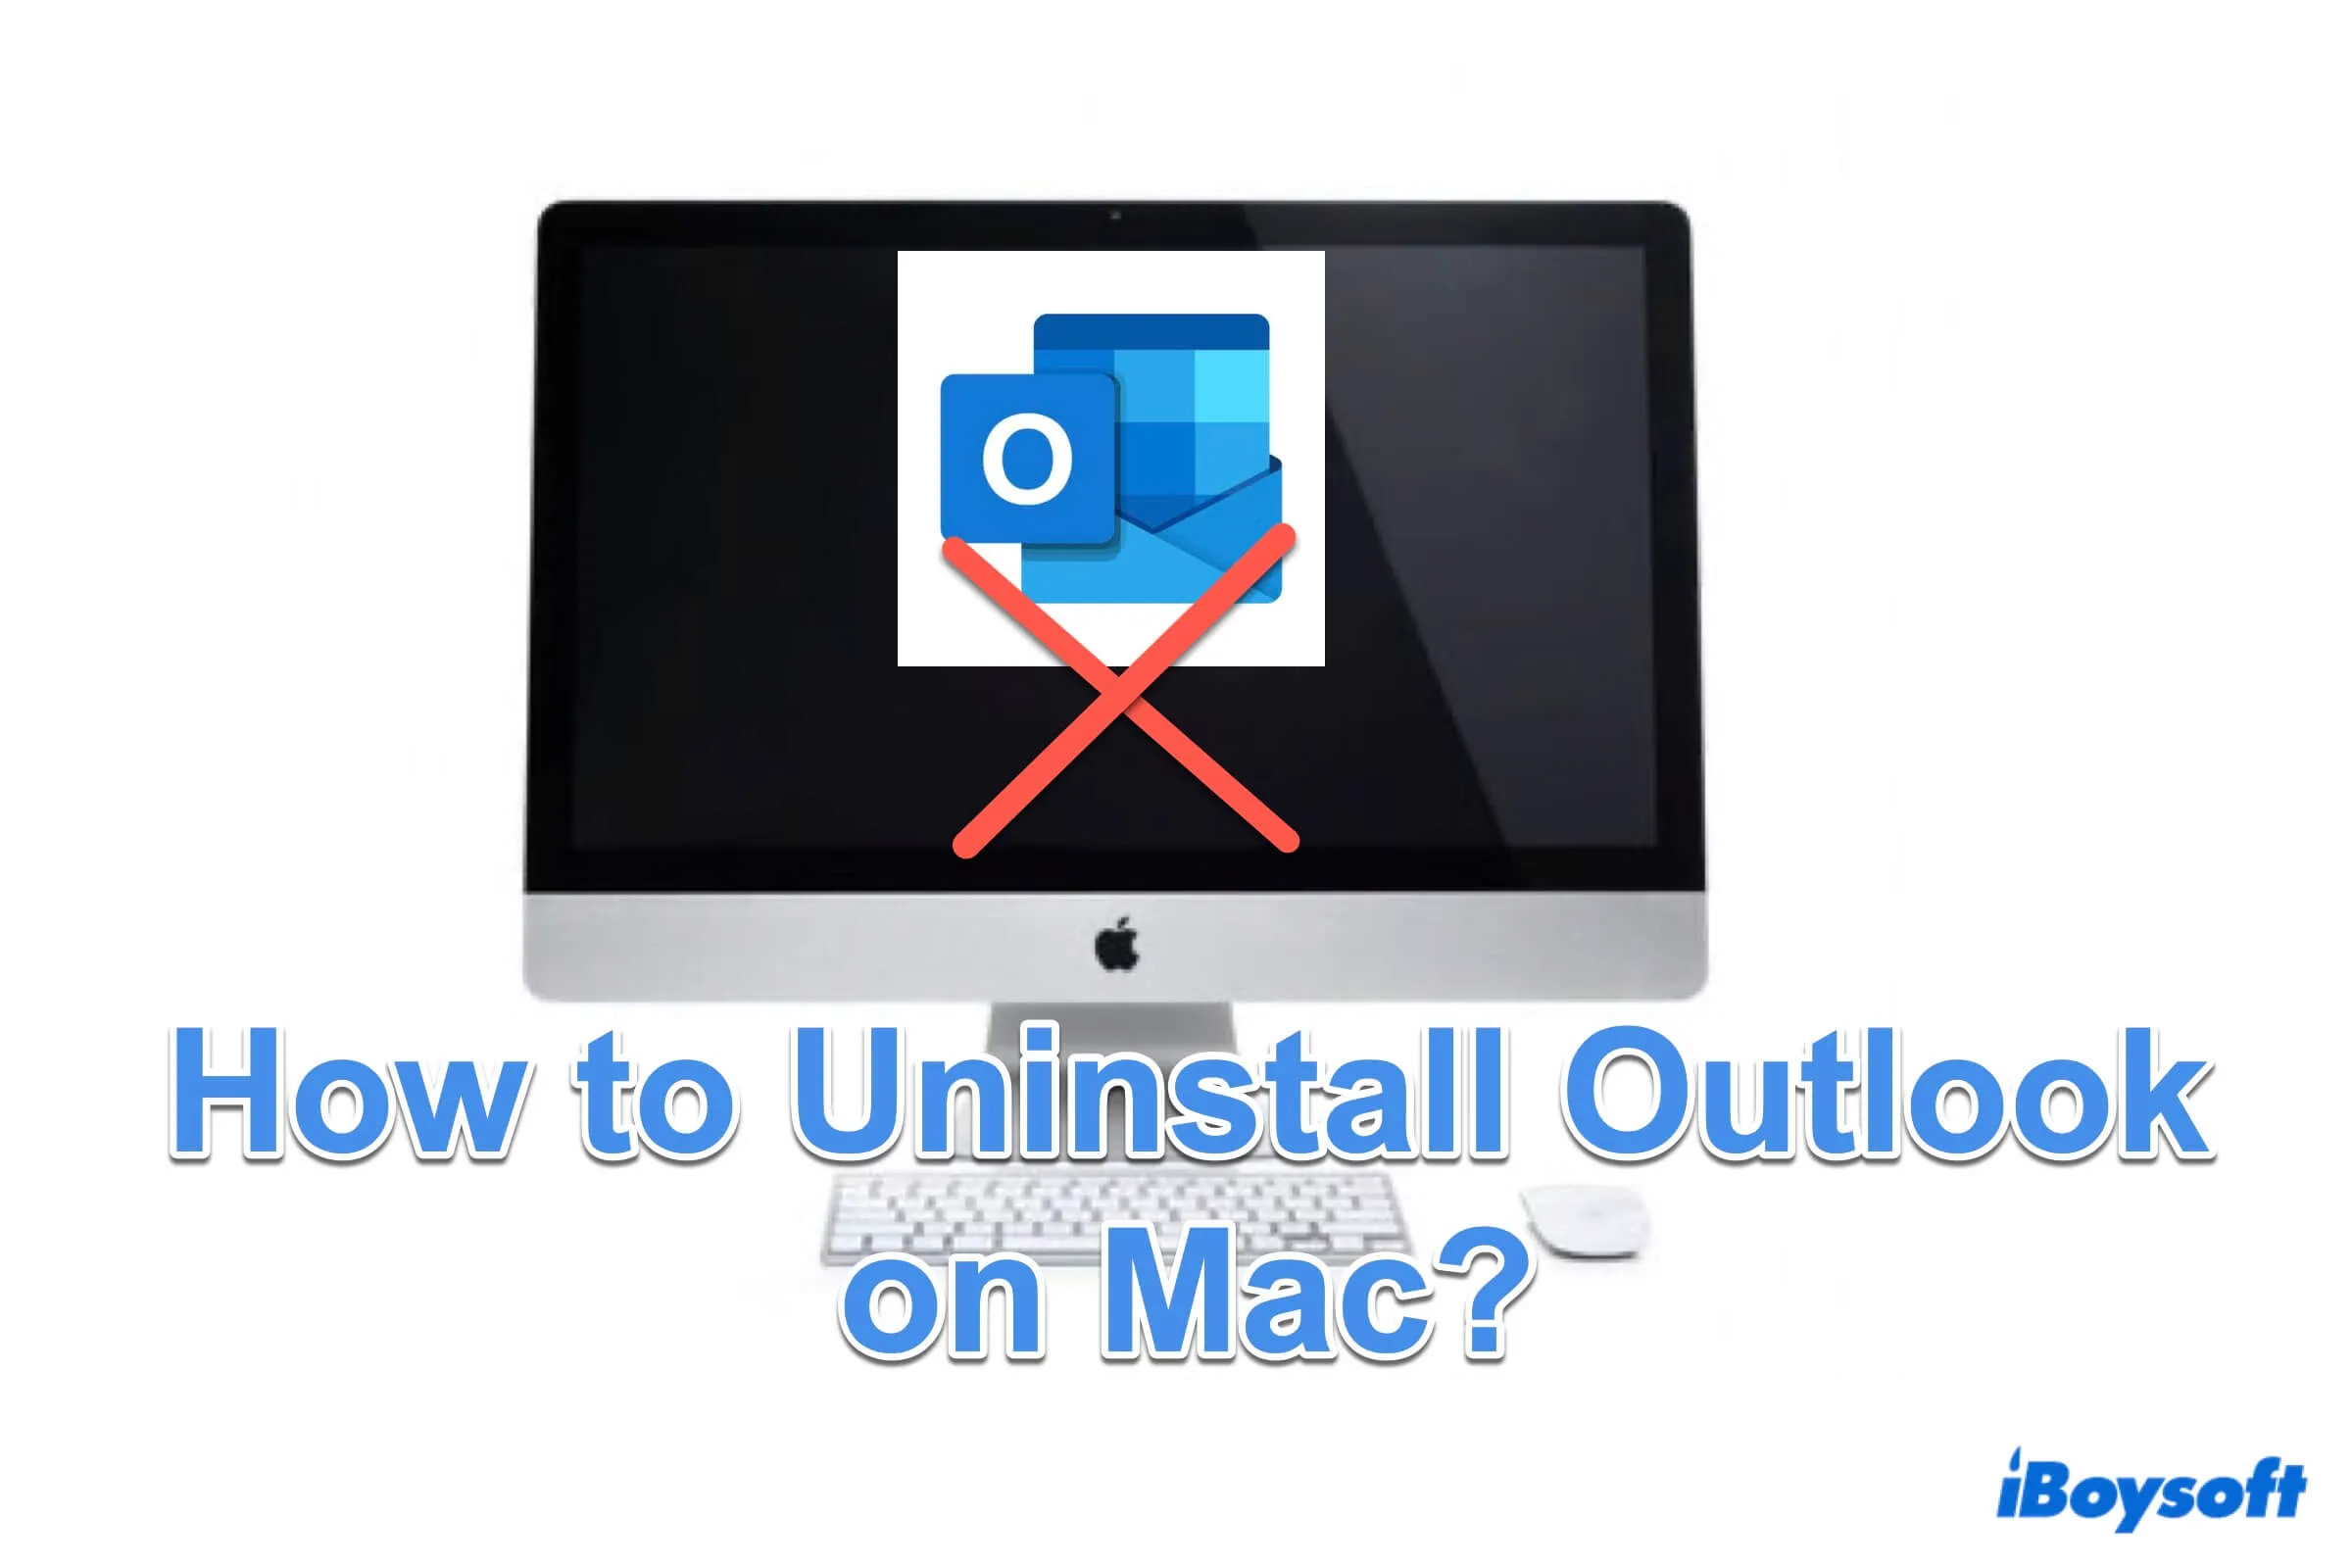 Résumé de la façon de désinstaller Outlook sur Mac